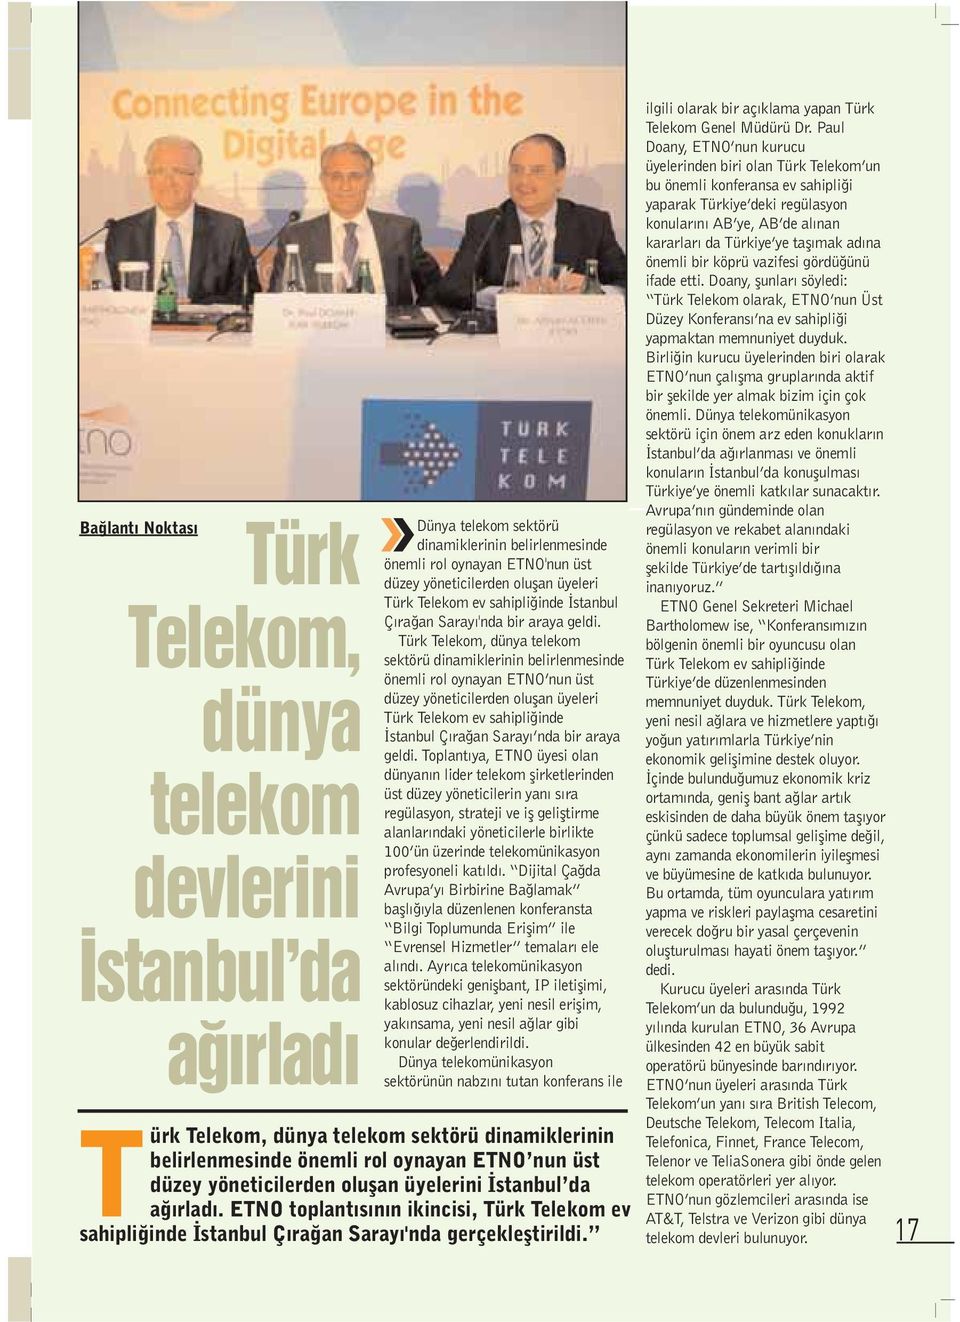 Türk Telekom, dünya telekom sektörü dinamiklerinin belirlenmesinde önemli rol oynayan ETNO nun üst düzey yöneticilerden oluflan üyeleri Türk Telekom ev sahipli inde stanbul Ç ra an Saray nda bir